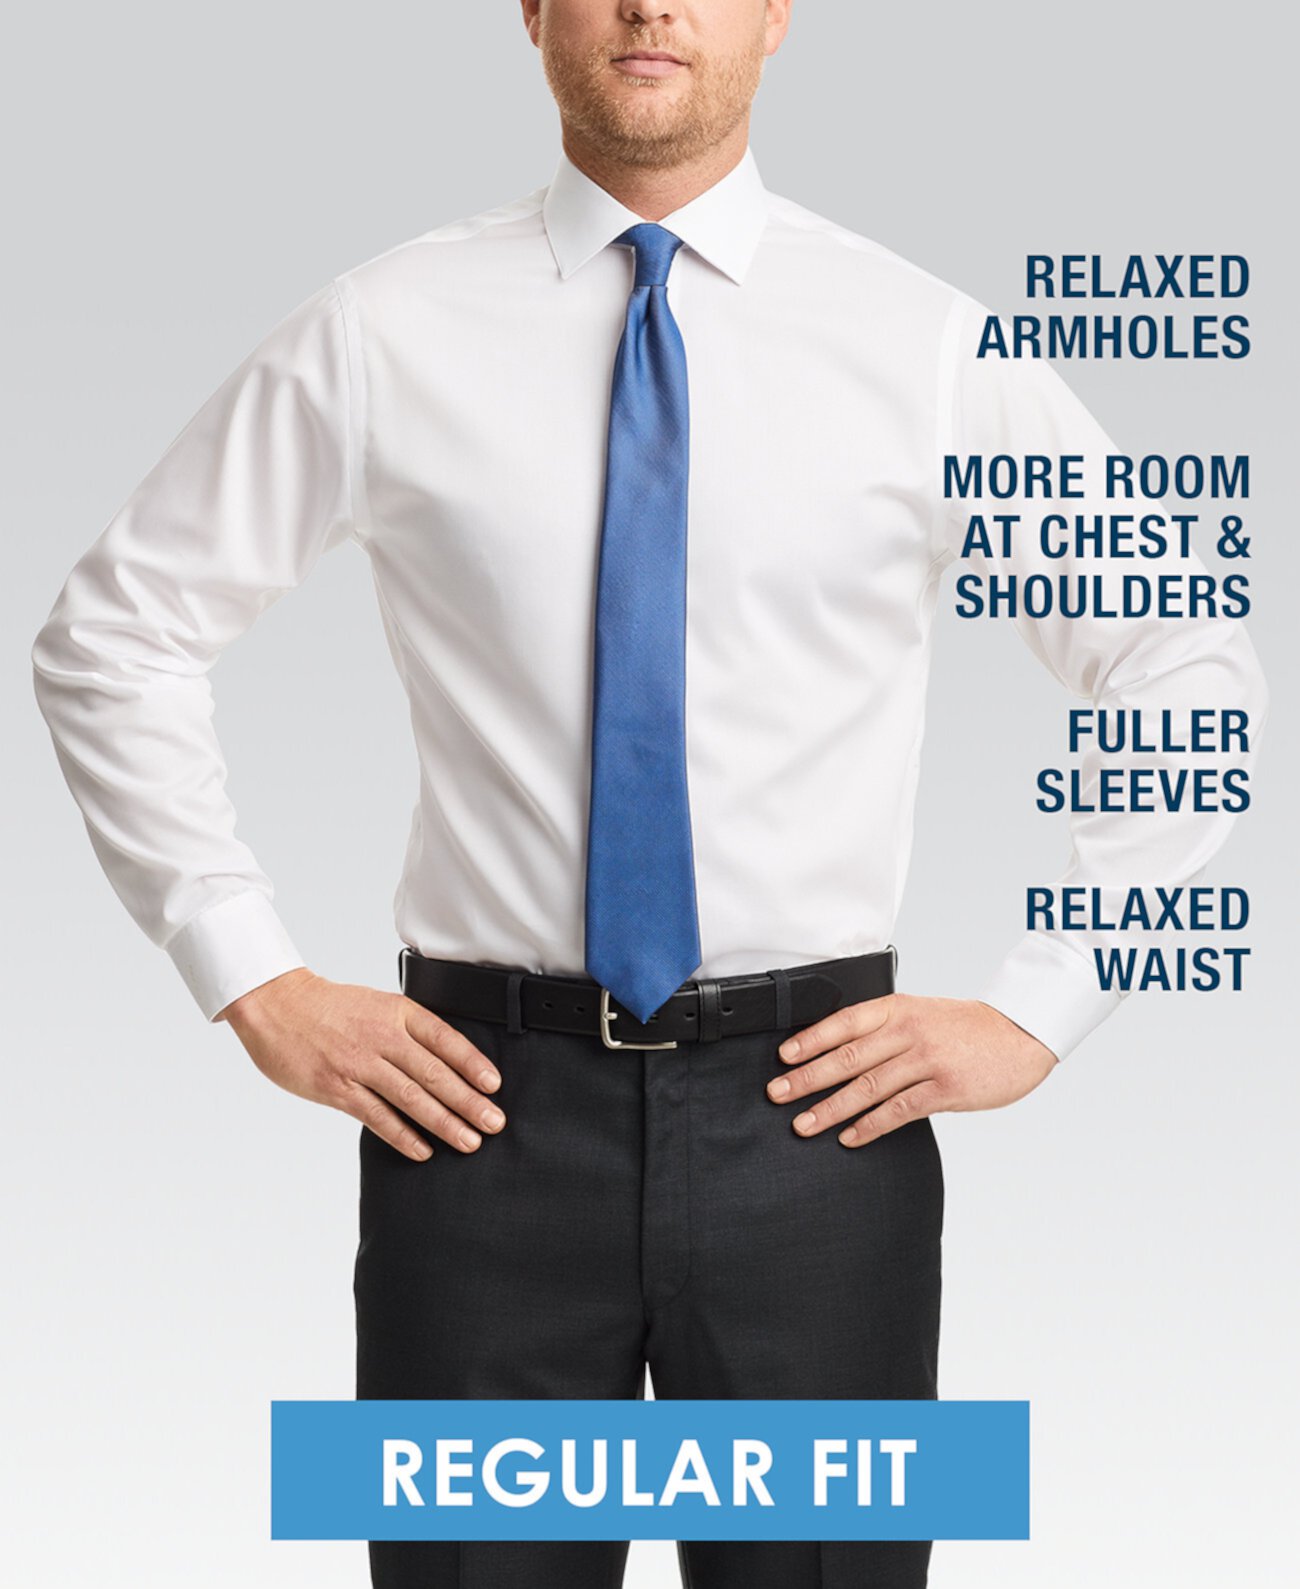 Мужская классическая/обычная классическая рубашка стрейч без железа Calvin Klein